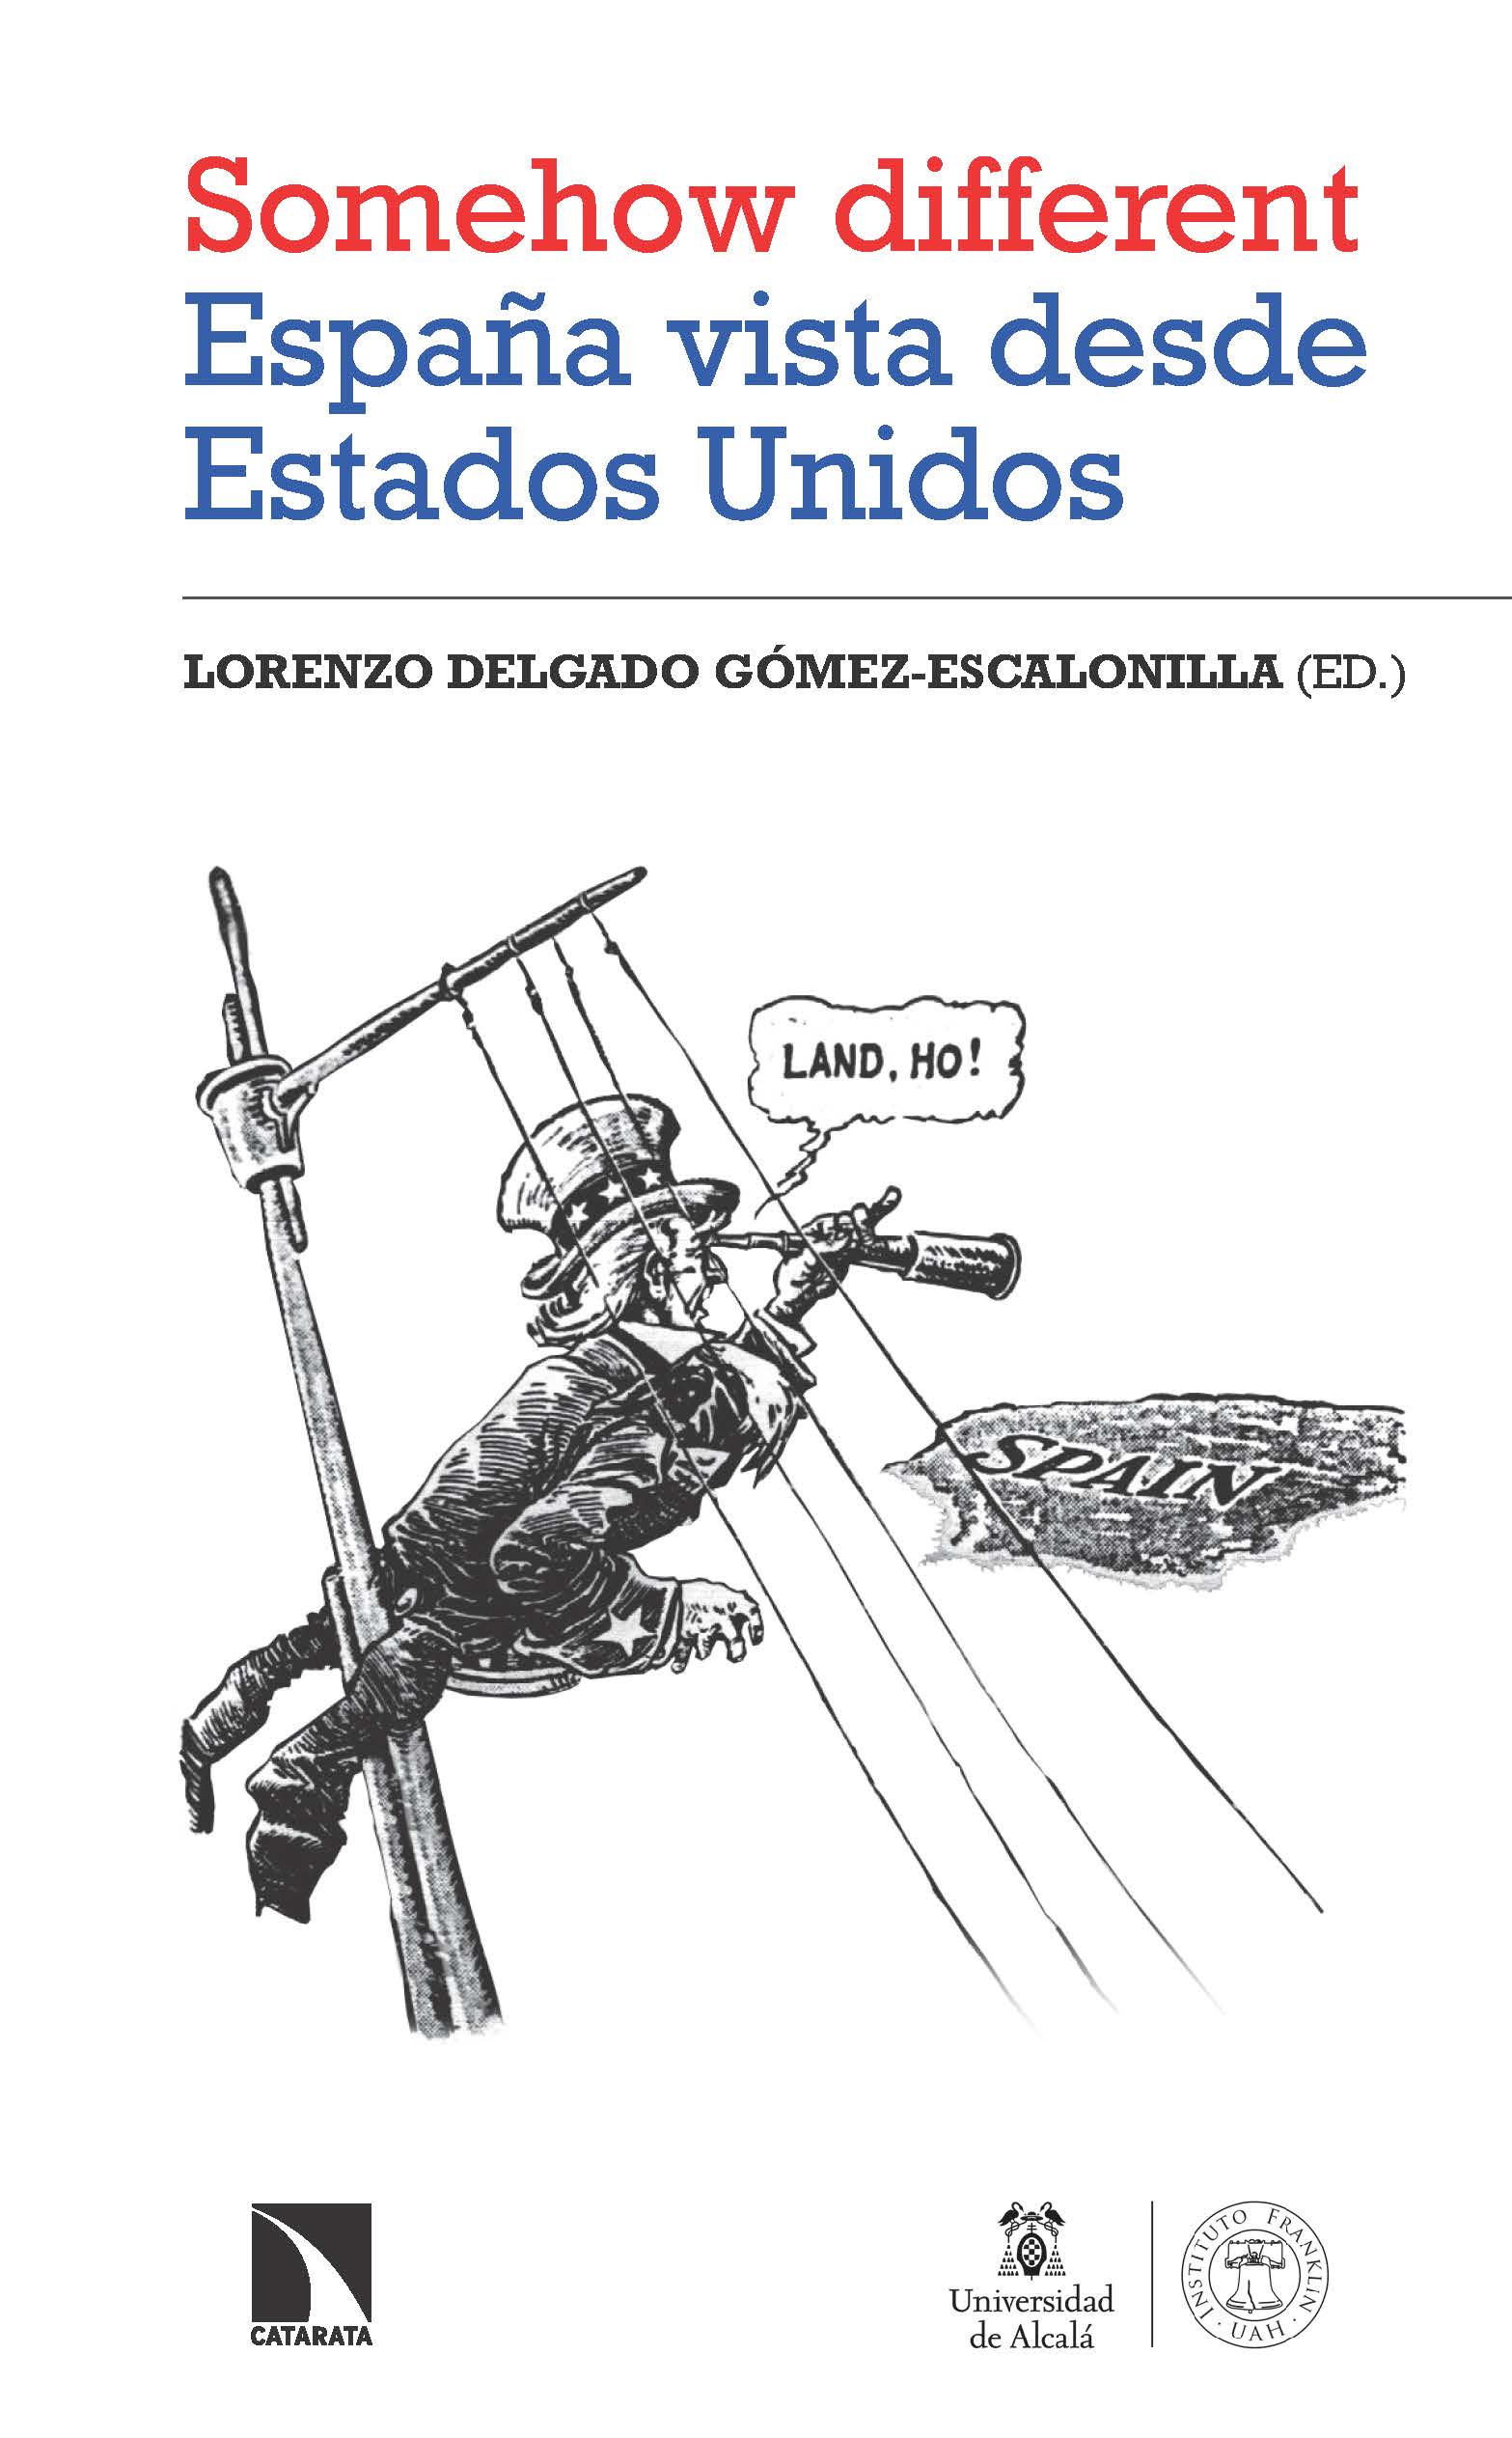 Lorenzo Delgado publica el libro: 'Somehow different'. España vista desde Estados Unidos.